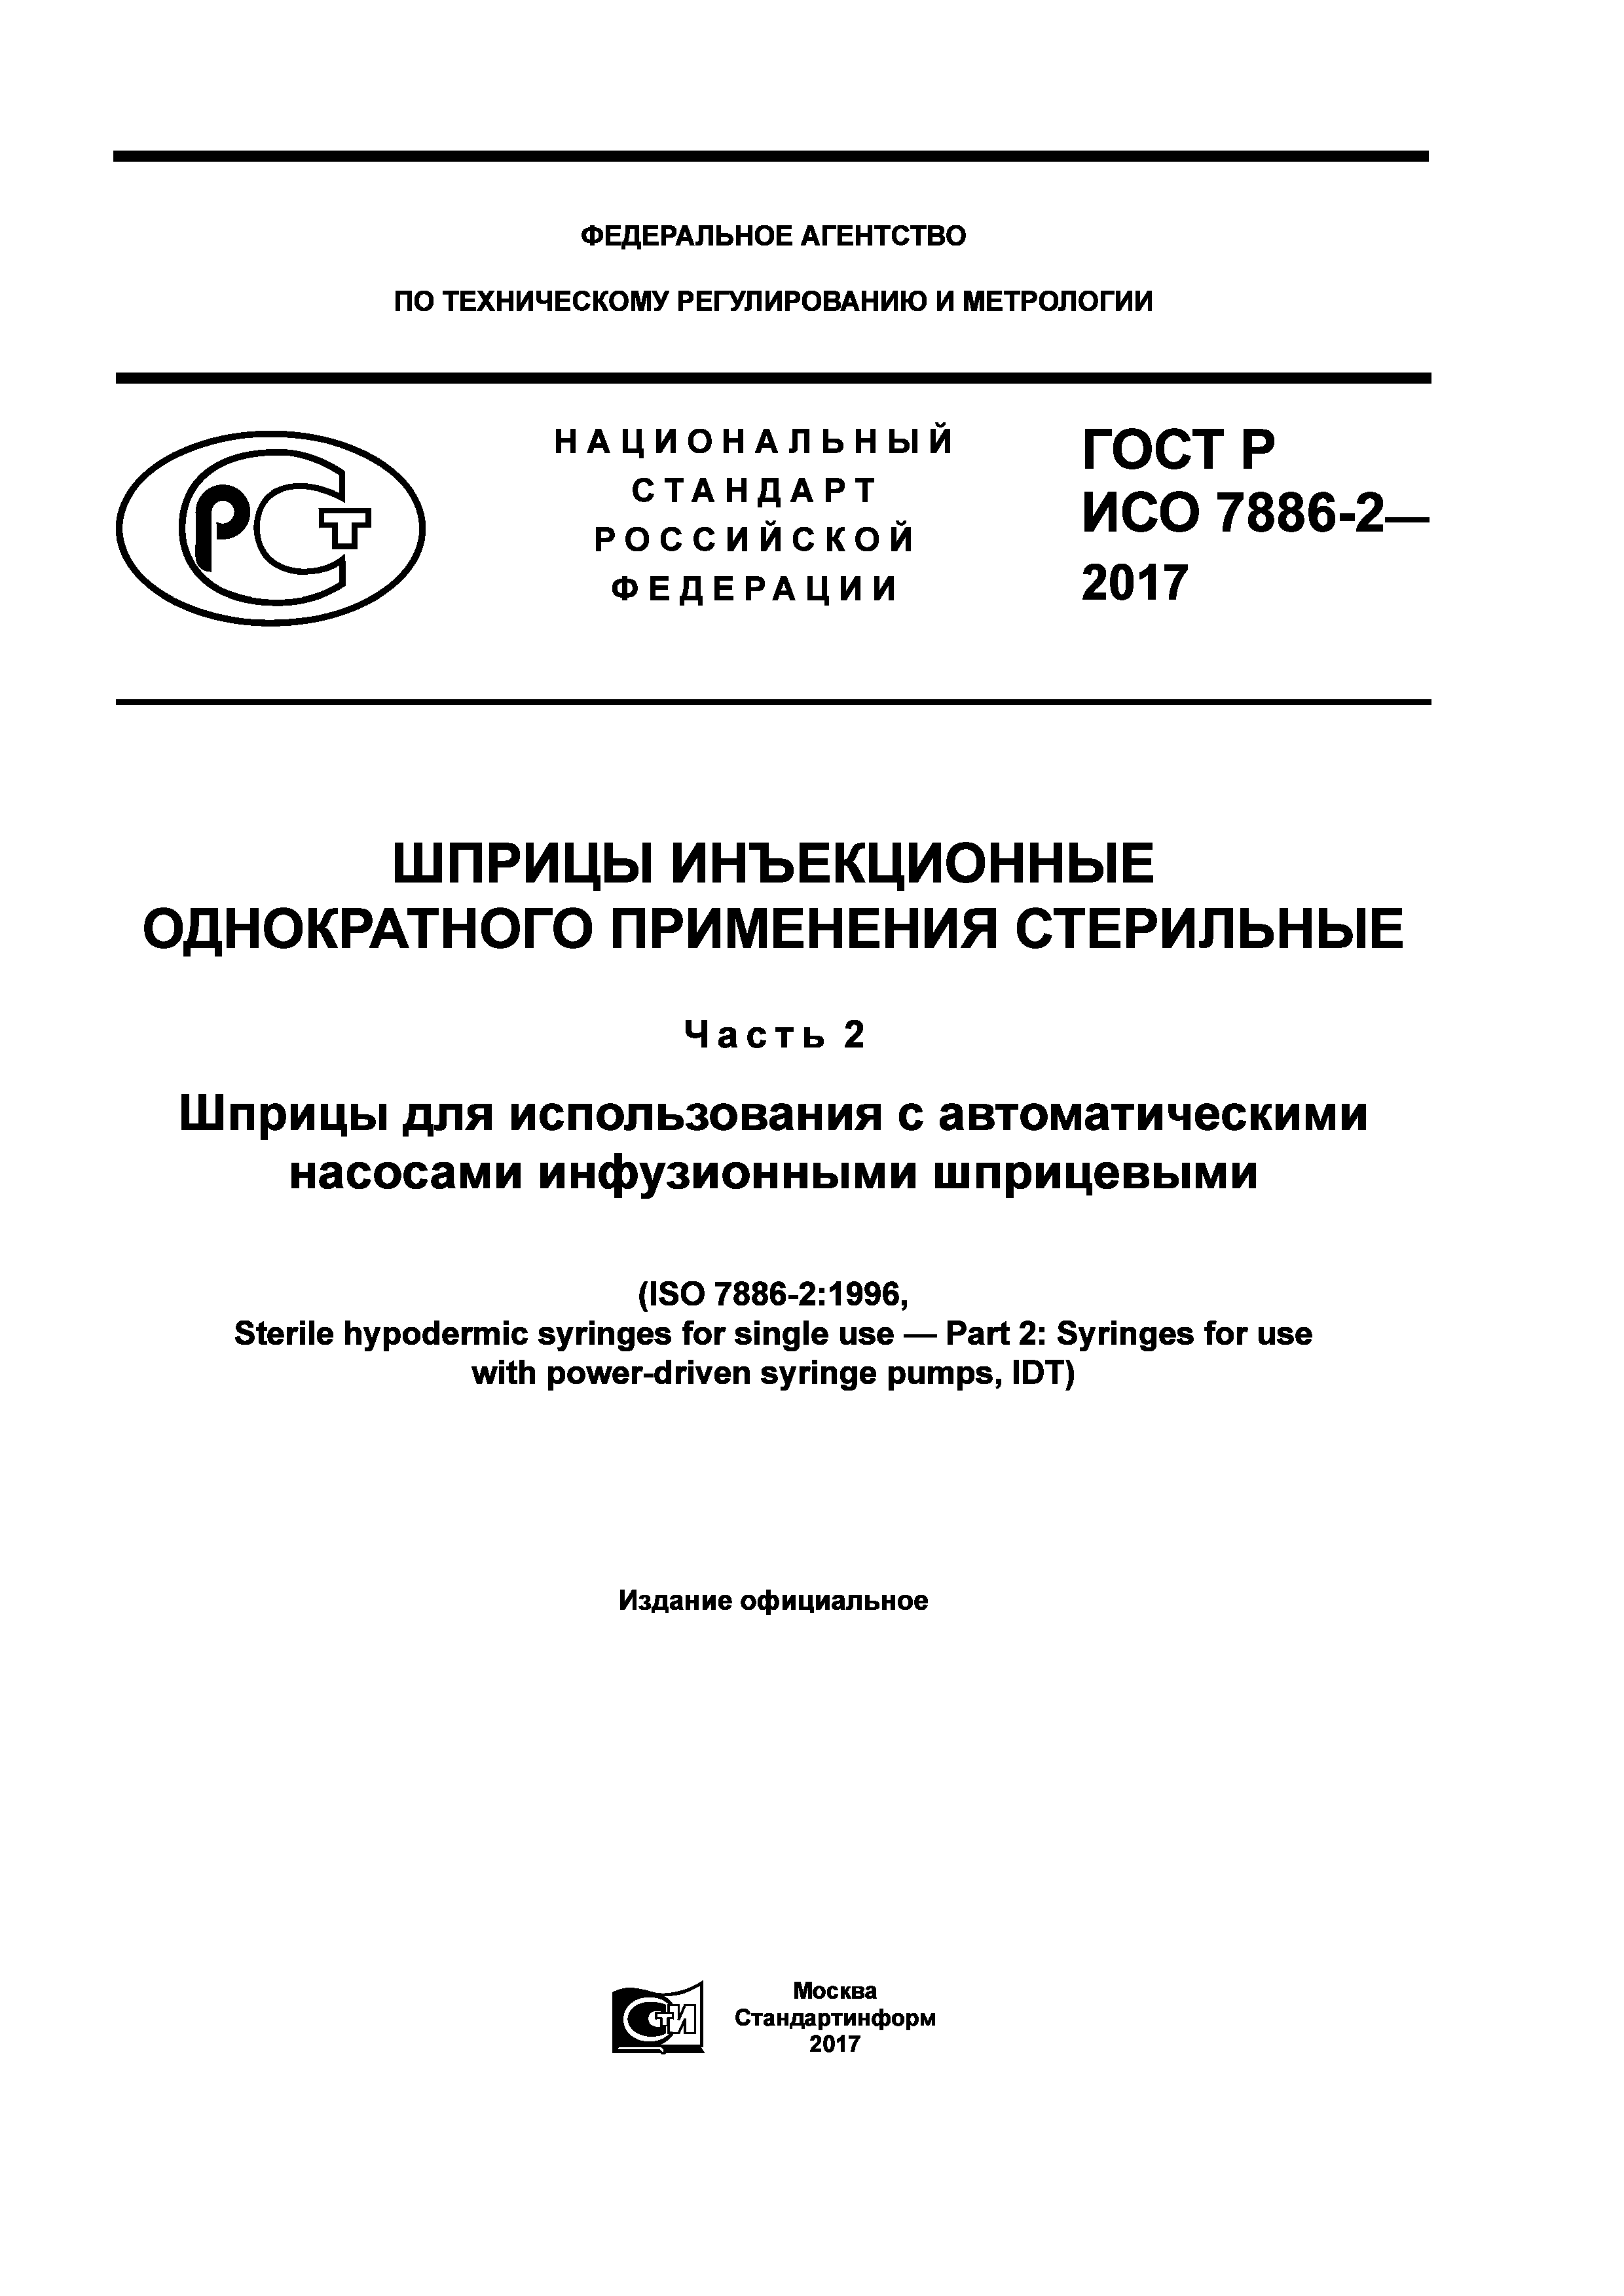 ГОСТ Р ИСО 7886-2-2017